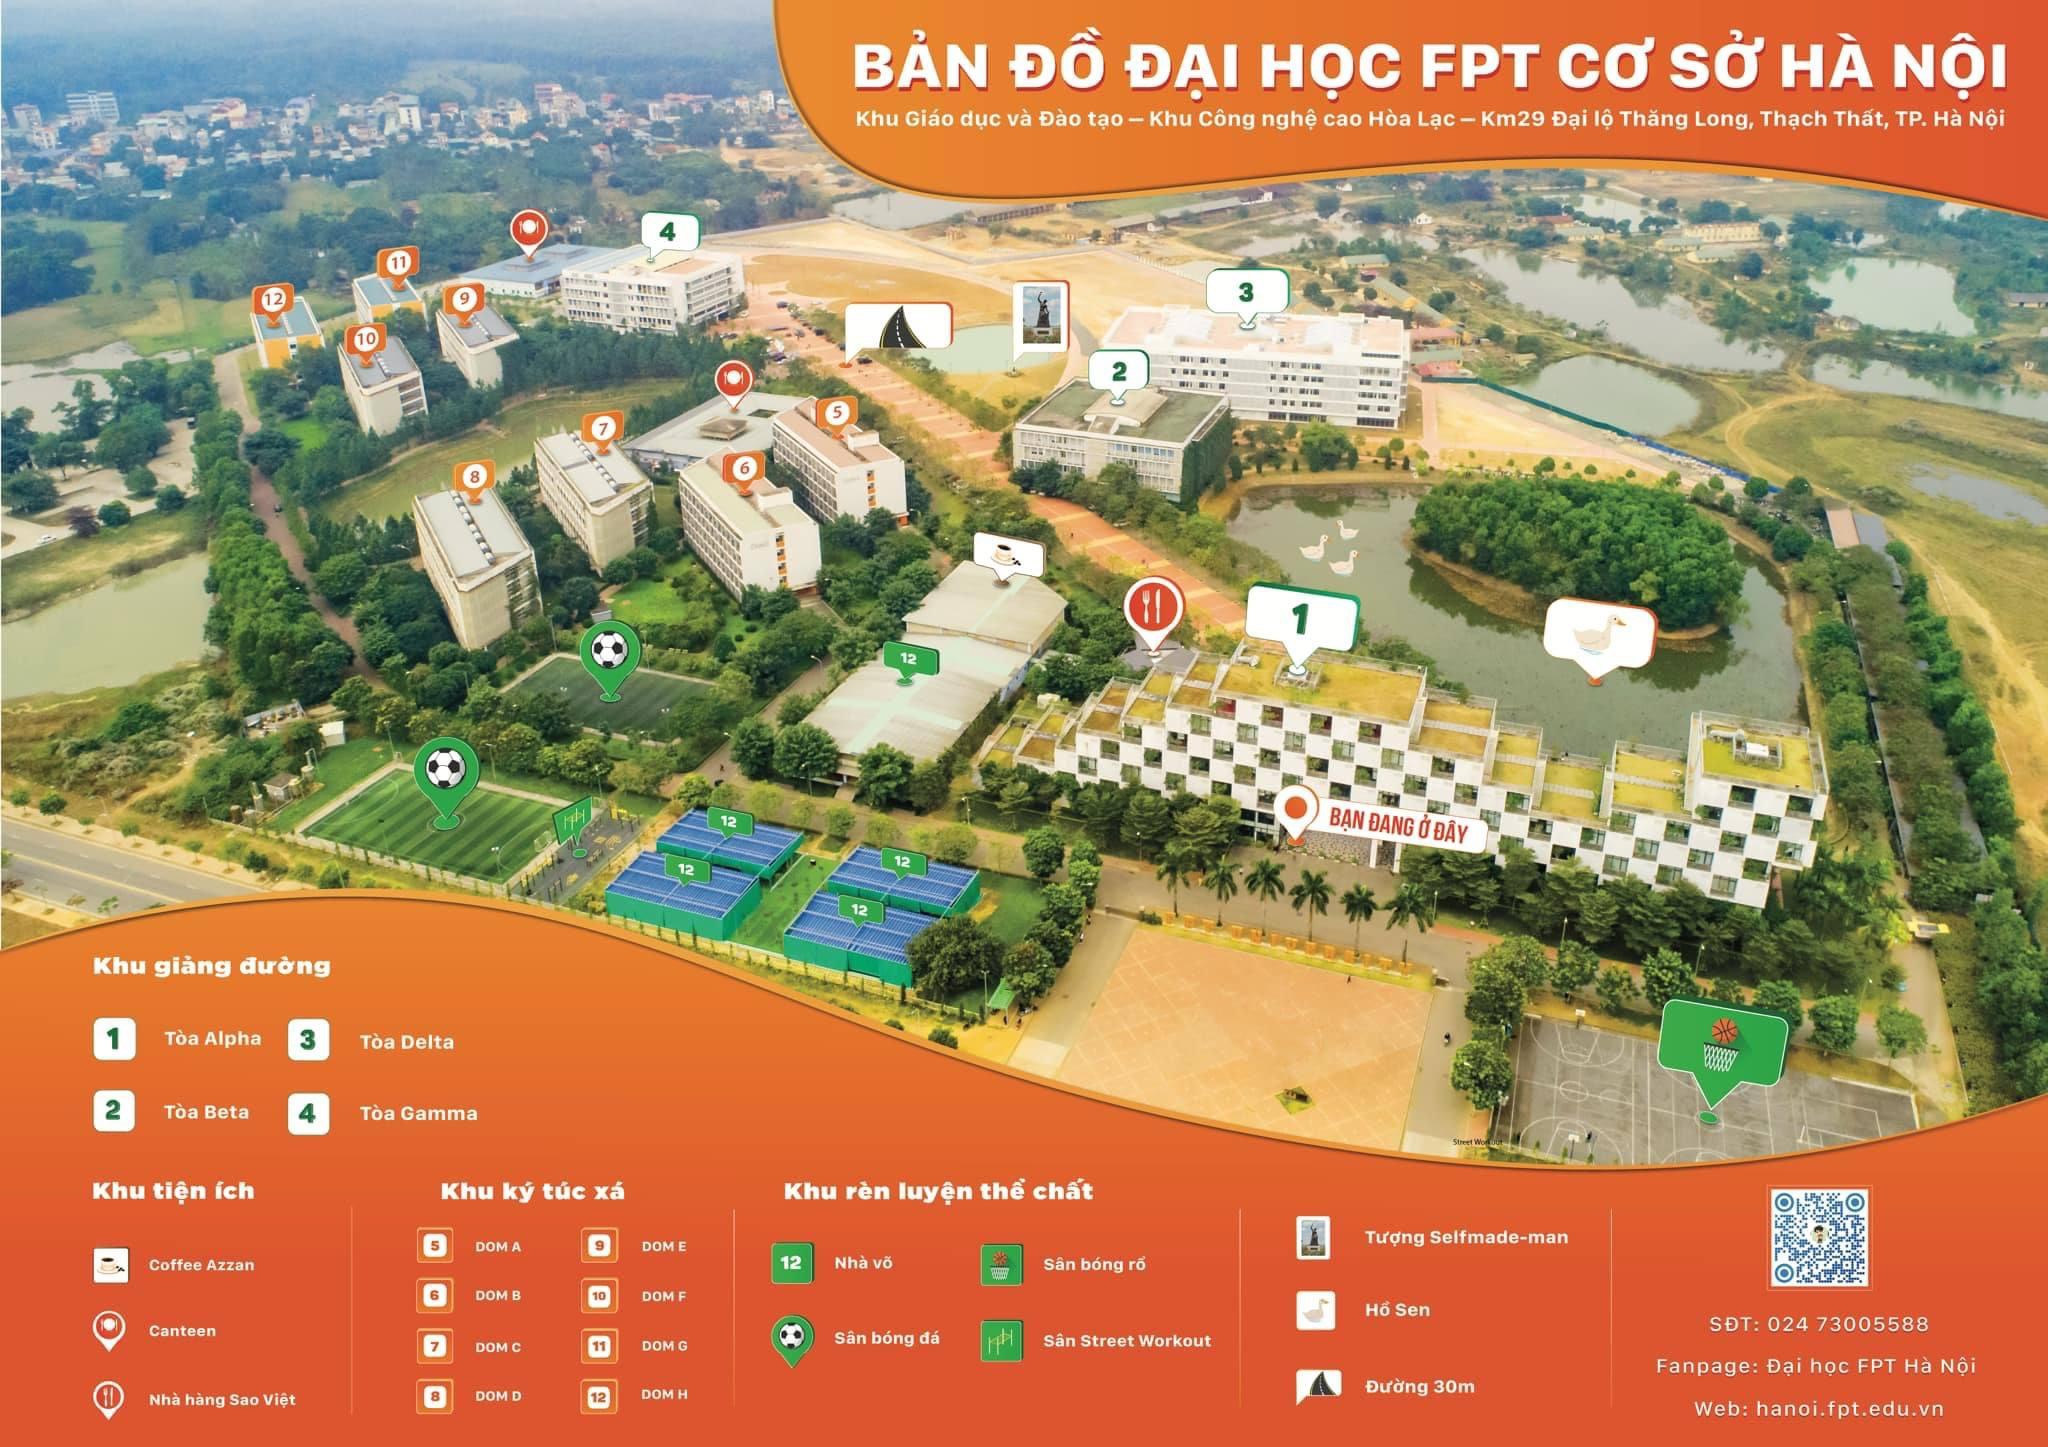 Đại học FPT là một trường đại học hàng đầu tại Việt Nam, mang đến cho sinh viên một môi trường học tập quốc tế và các khóa học tiên tiến. Hãy xem hình ảnh liên quan đến trường Đại học FPT, bạn sẽ được trải nghiệm một trong những trường đại học đẹp nhất và hiện đại nhất của Việt Nam.